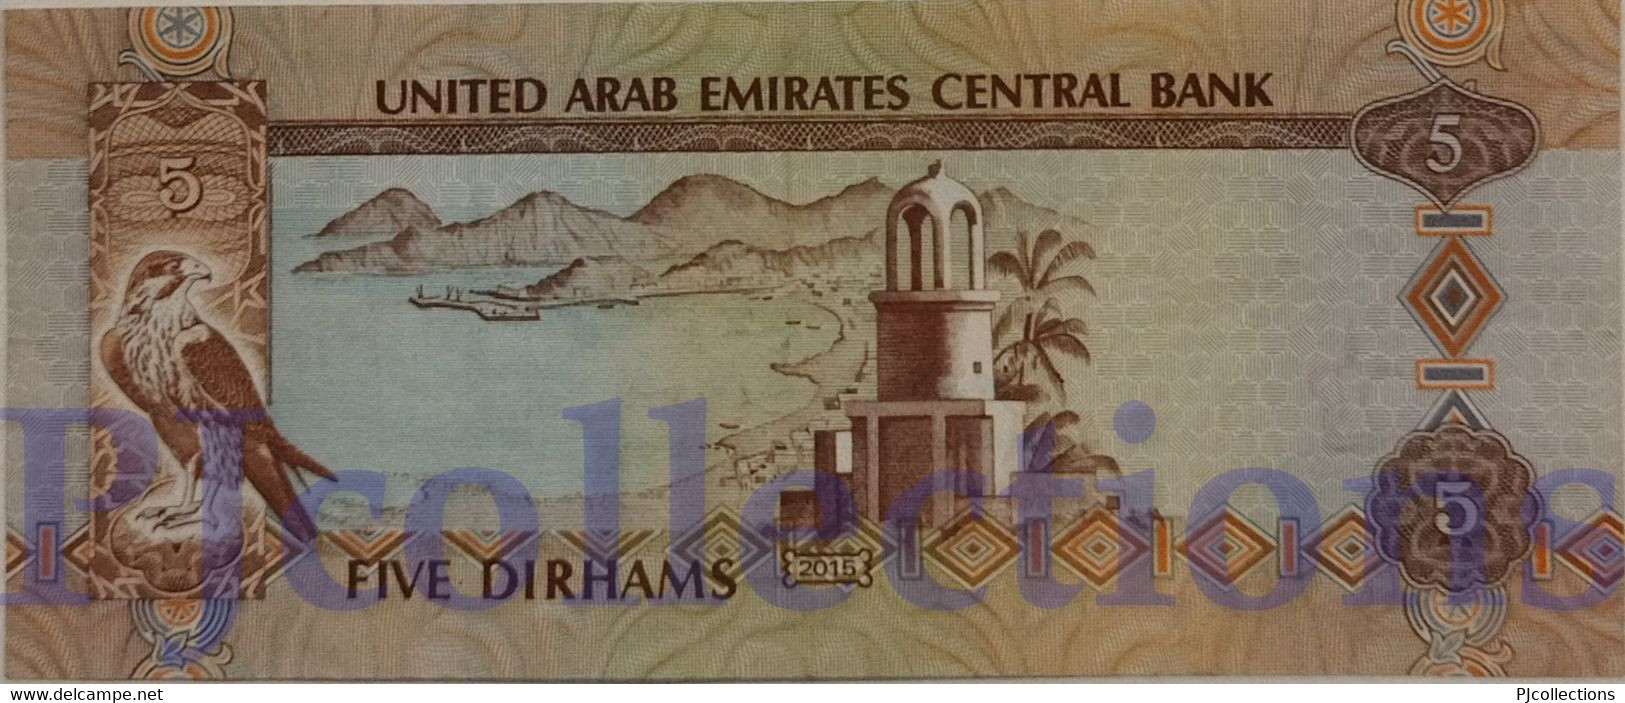 UNITED ARAB EMIRATES 5 DIRHAMS 2015 PICK 26c XF - Emiratos Arabes Unidos